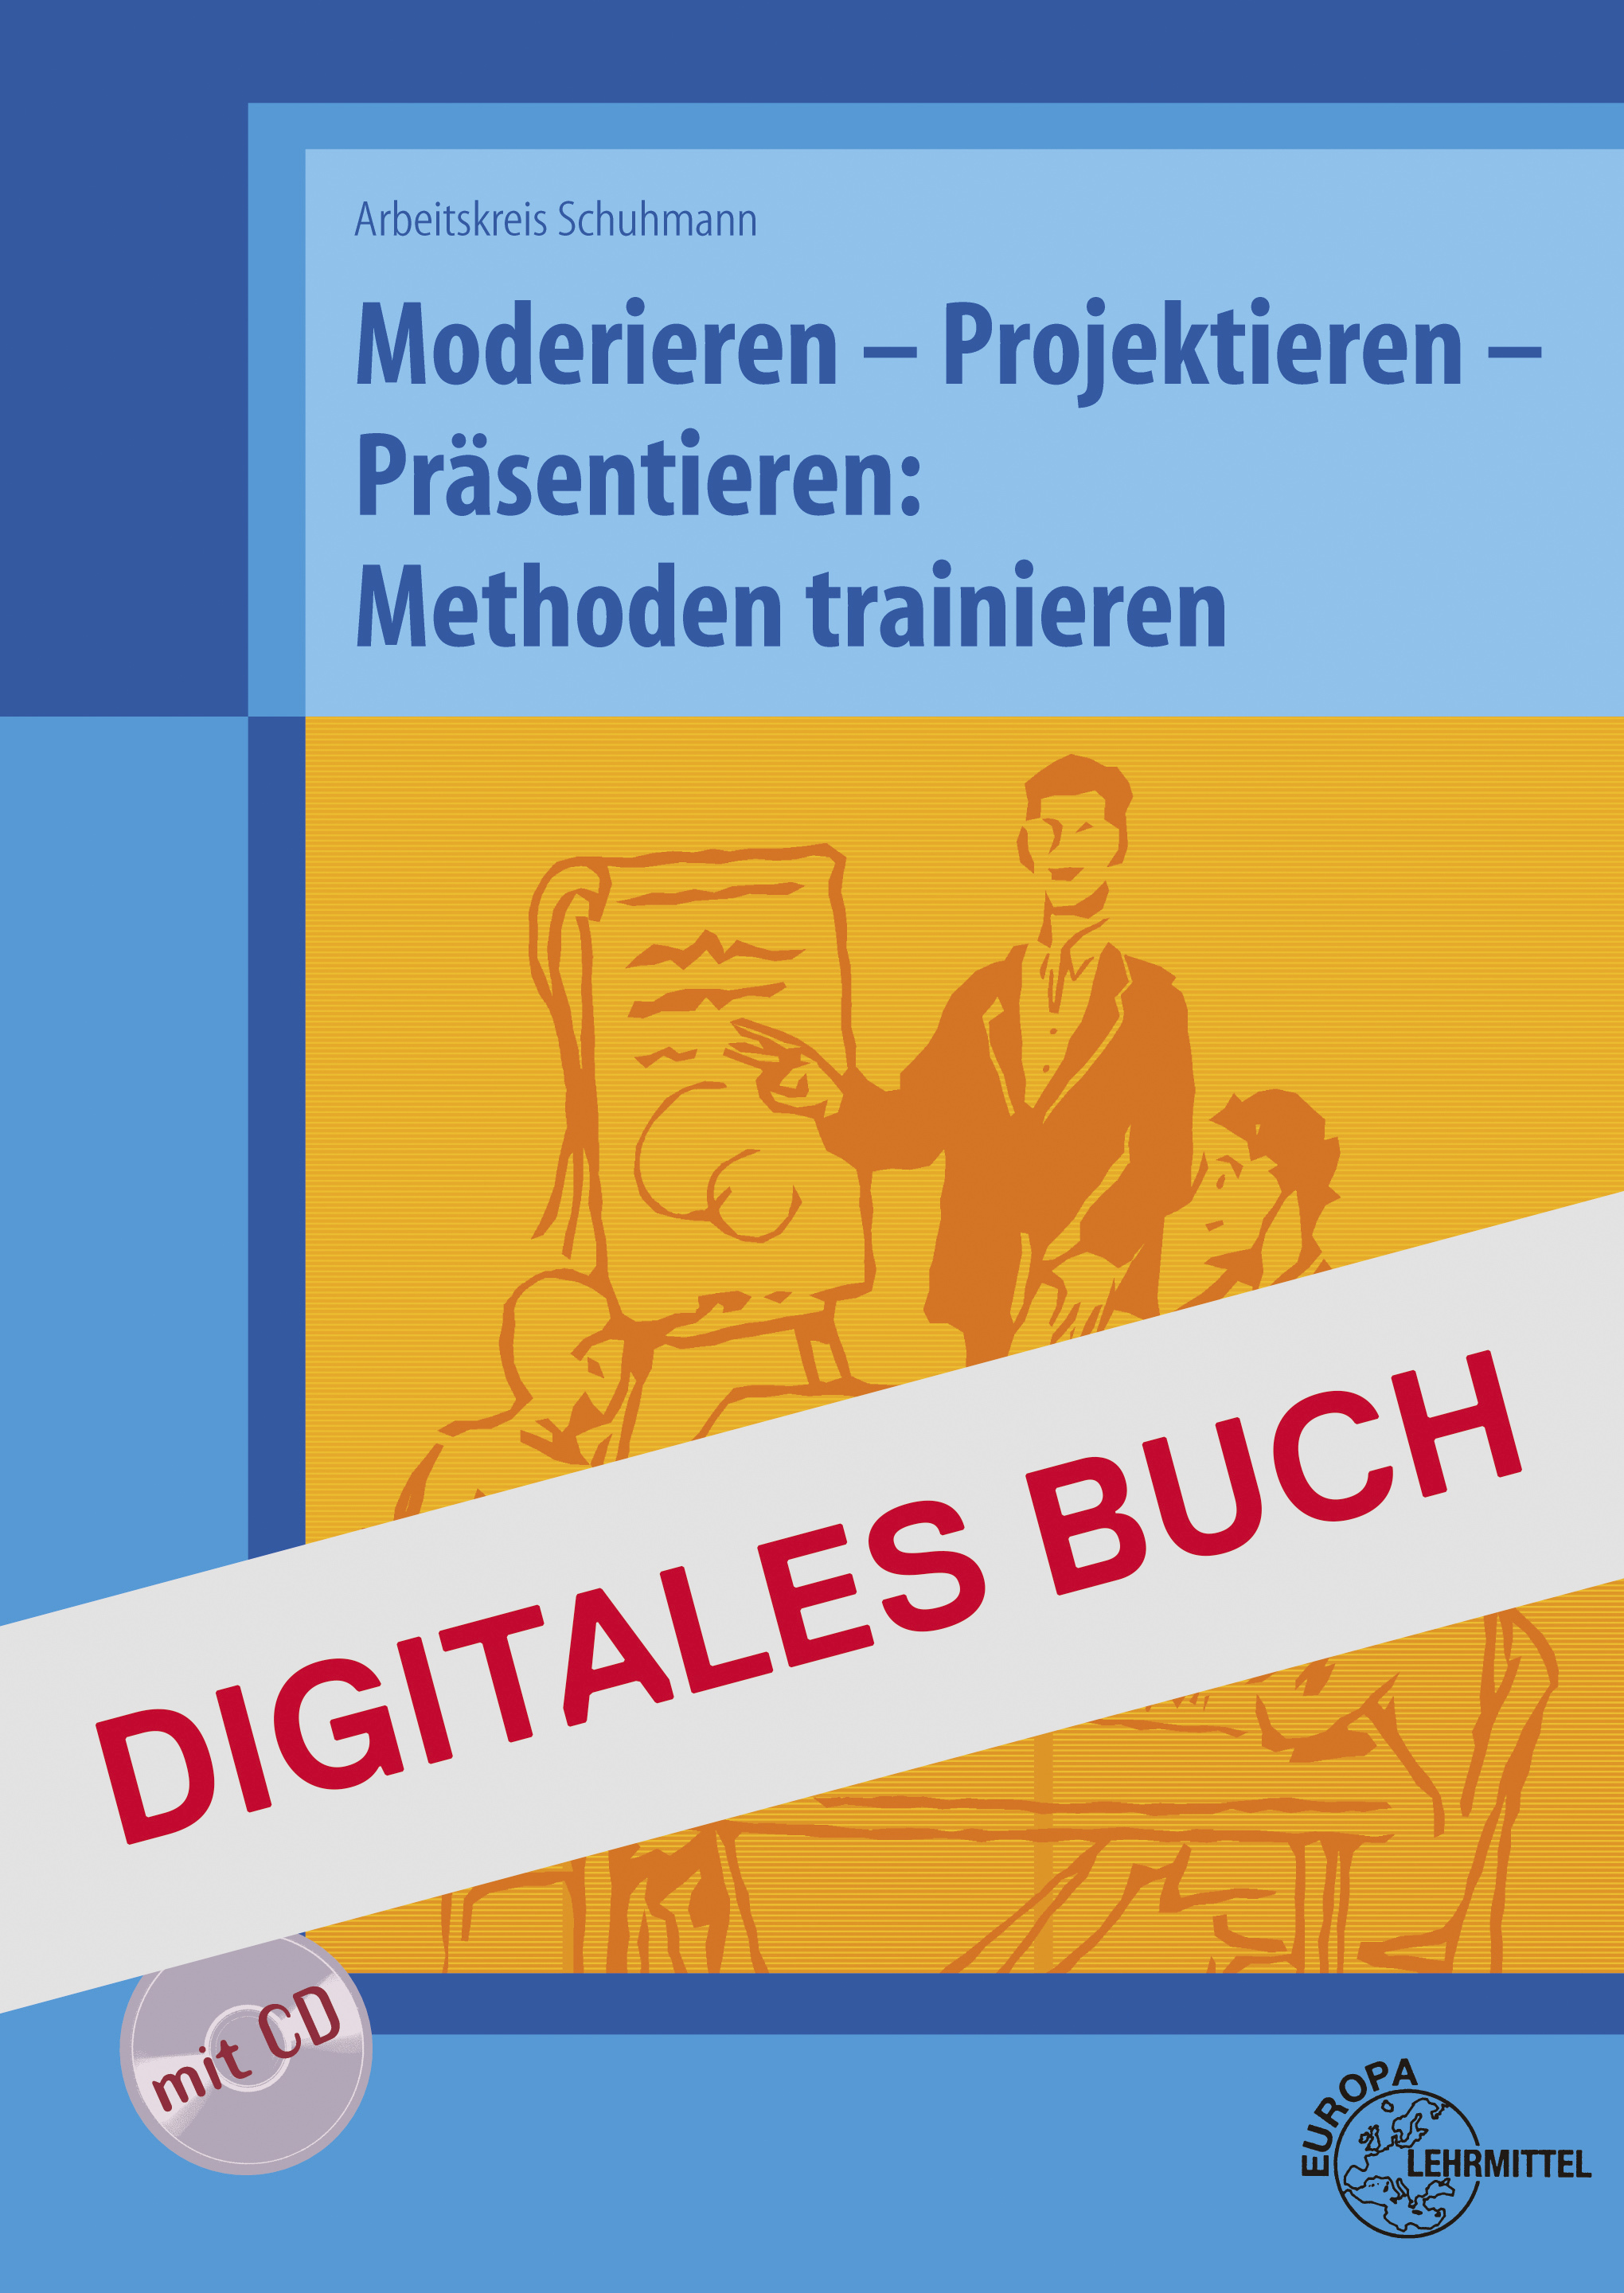 Methoden trainieren, Moderieren- Projektieren - Digitales Buch